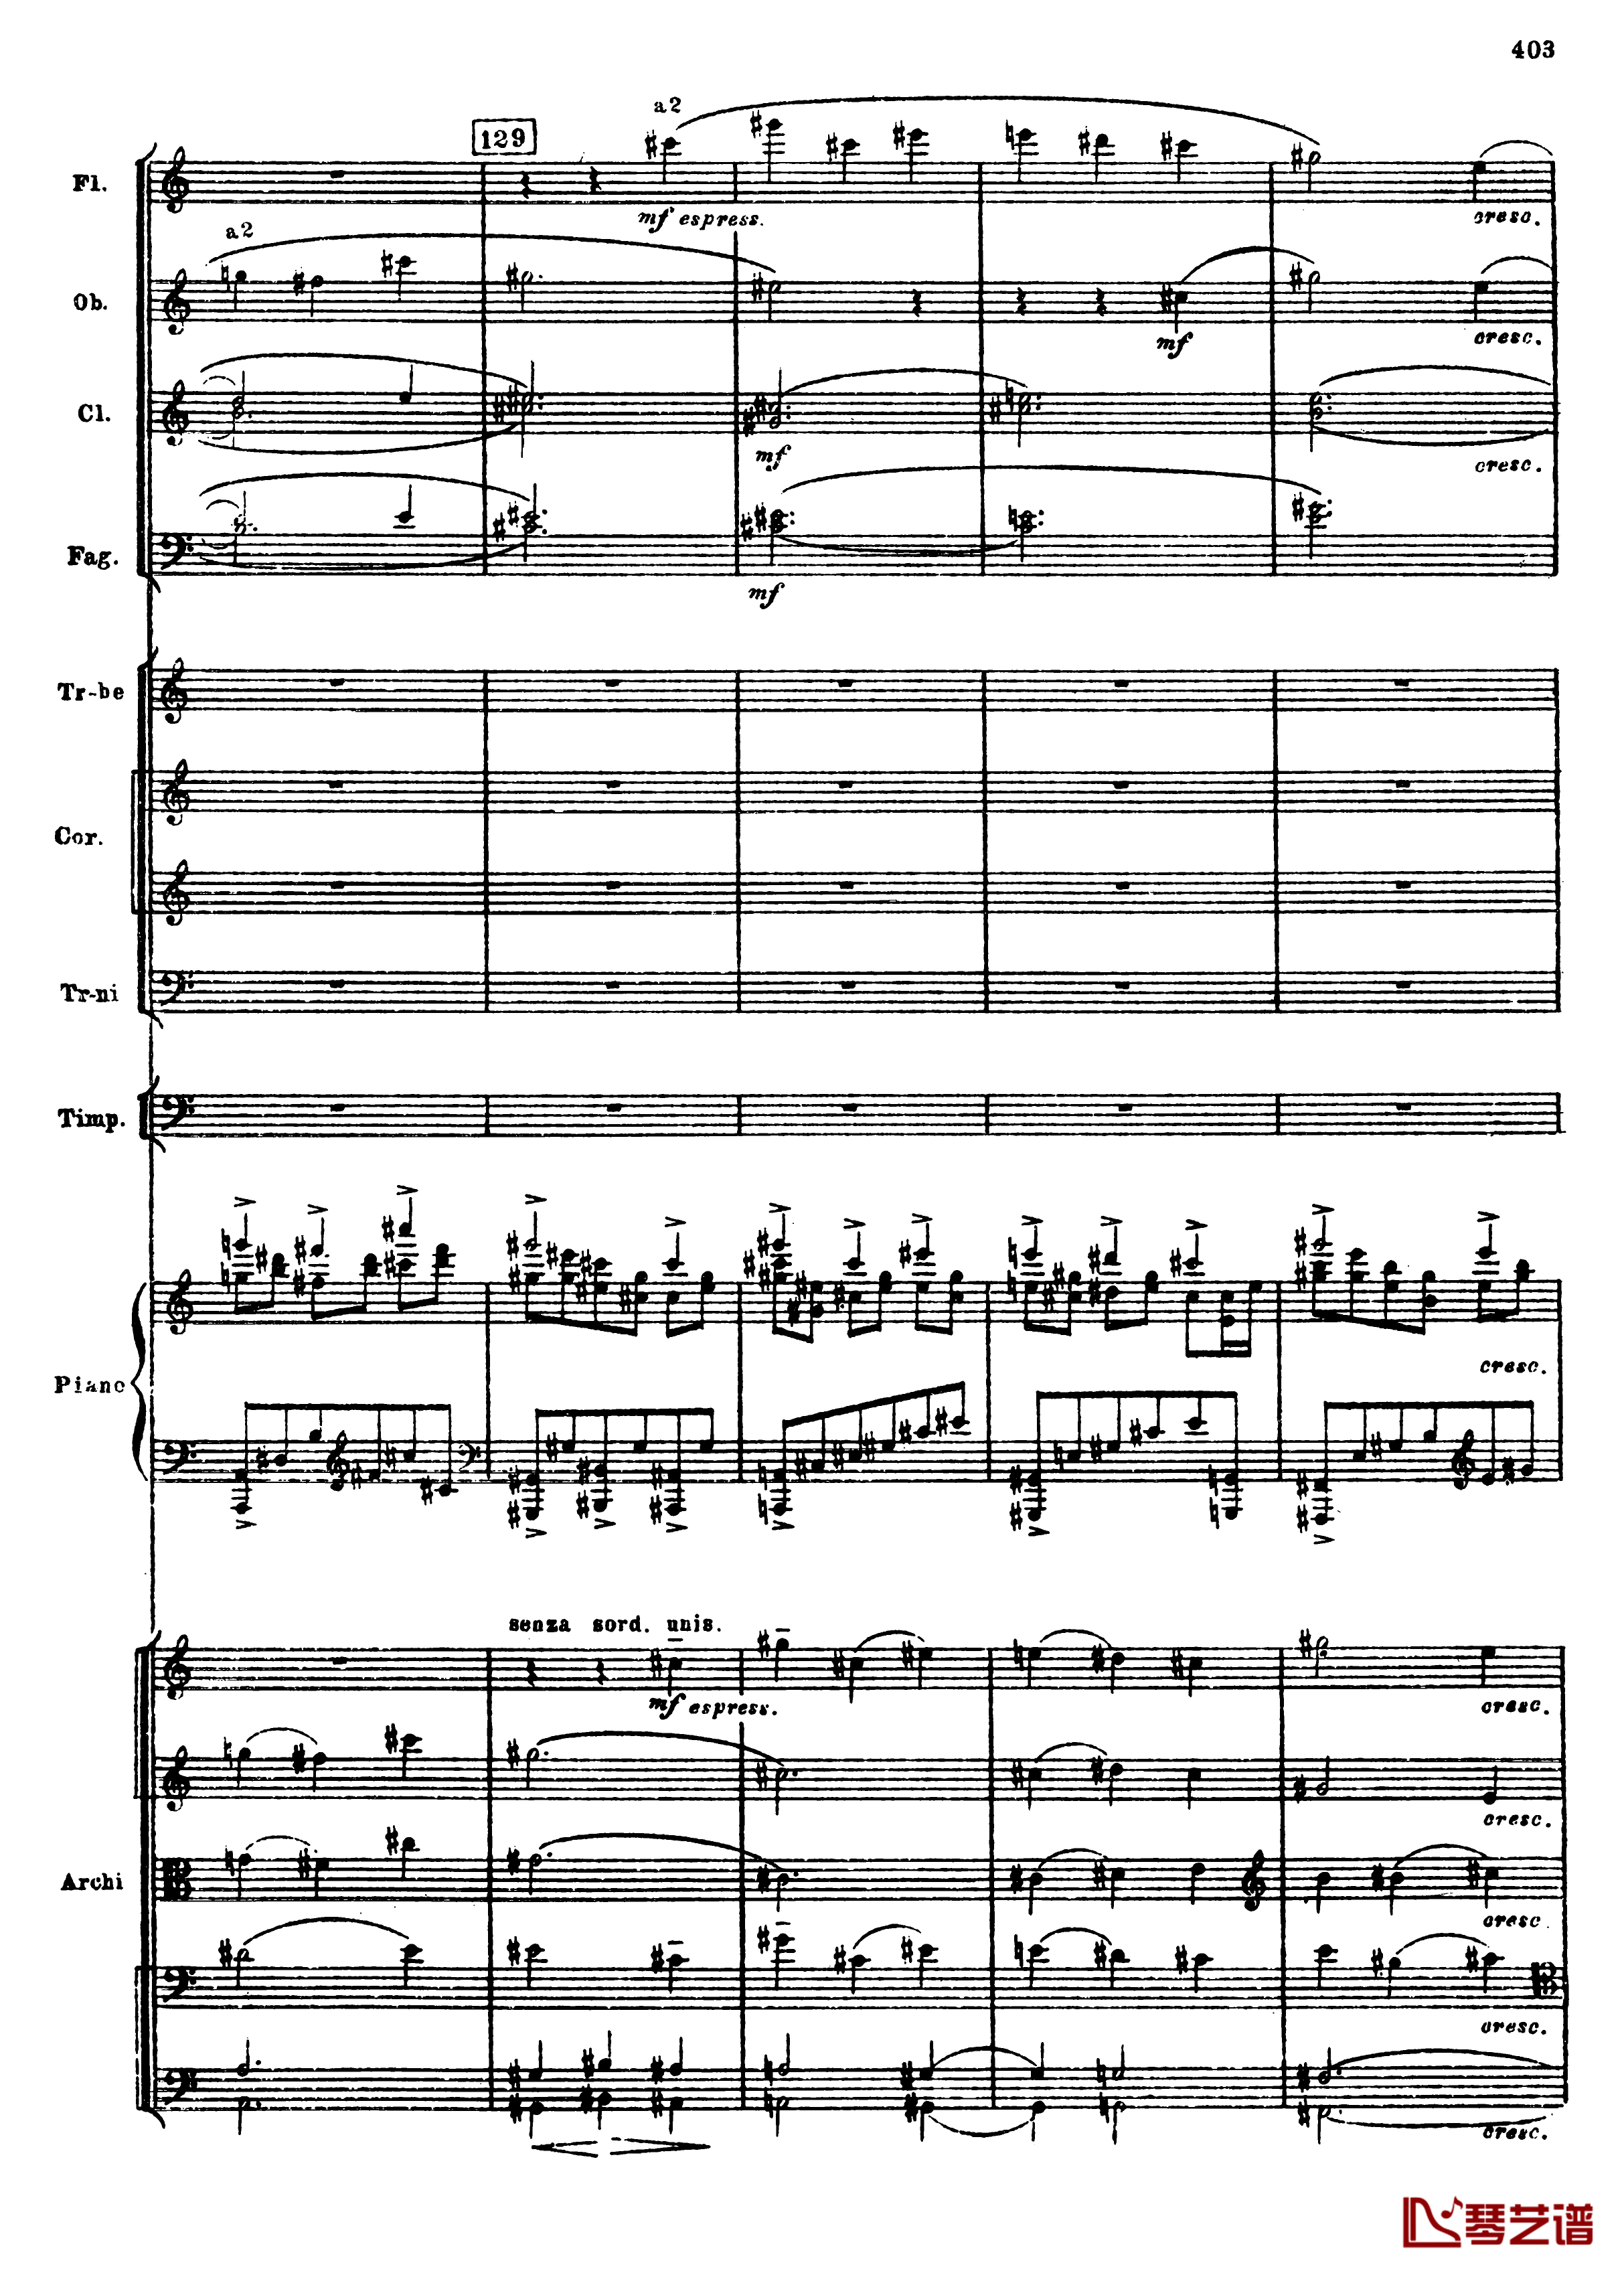 普罗科菲耶夫第三钢琴协奏曲钢琴谱-总谱-普罗科非耶夫135